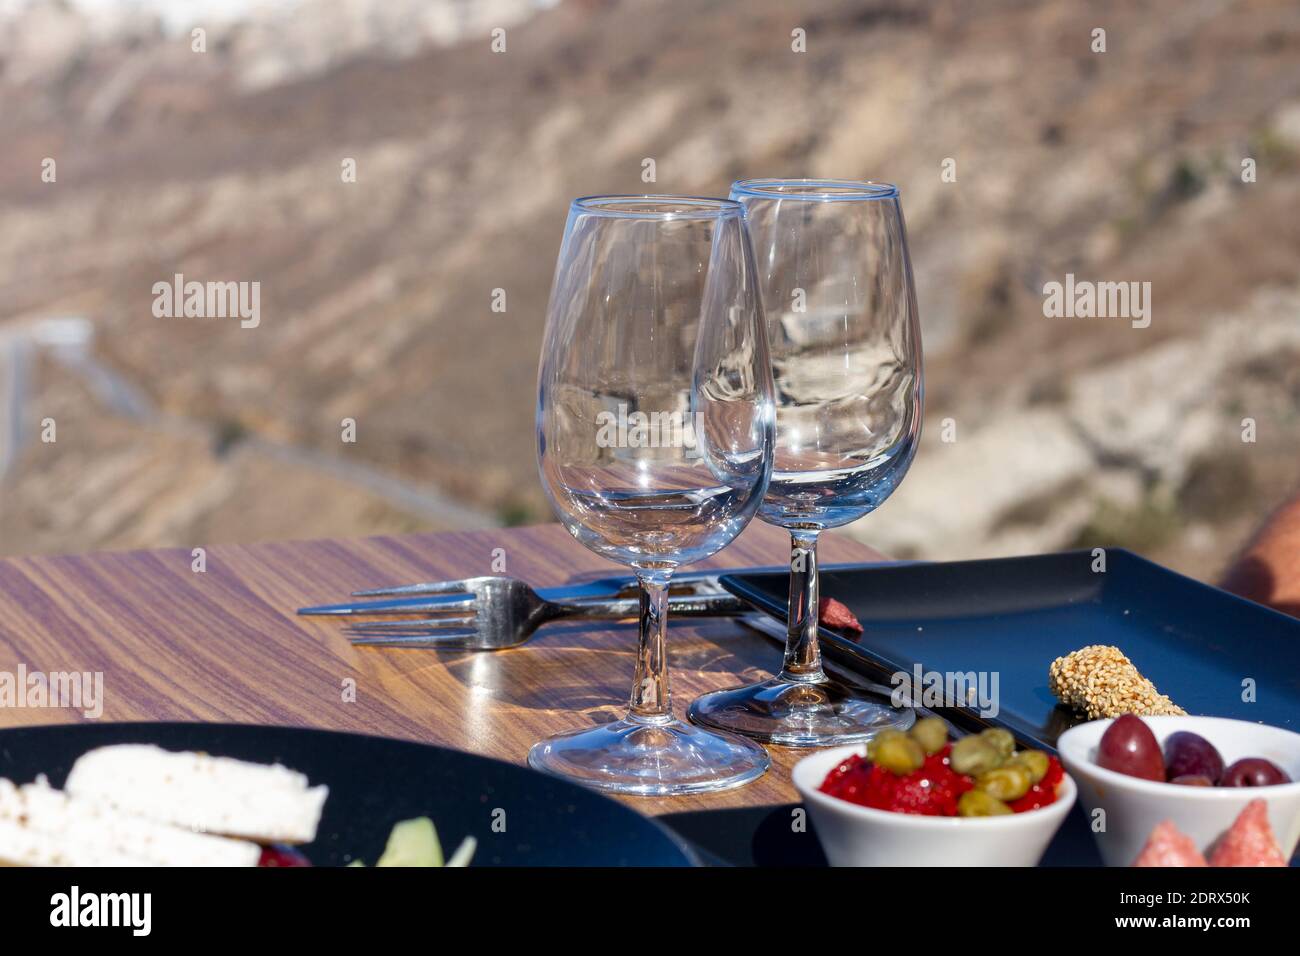 Insalata greca (choriatiki) e foglie d'uva, su un tavolo servito con cucina greca e mediterranea, nel villaggio di Oia, isola di Santorini, Grecia, Europa. Foto Stock